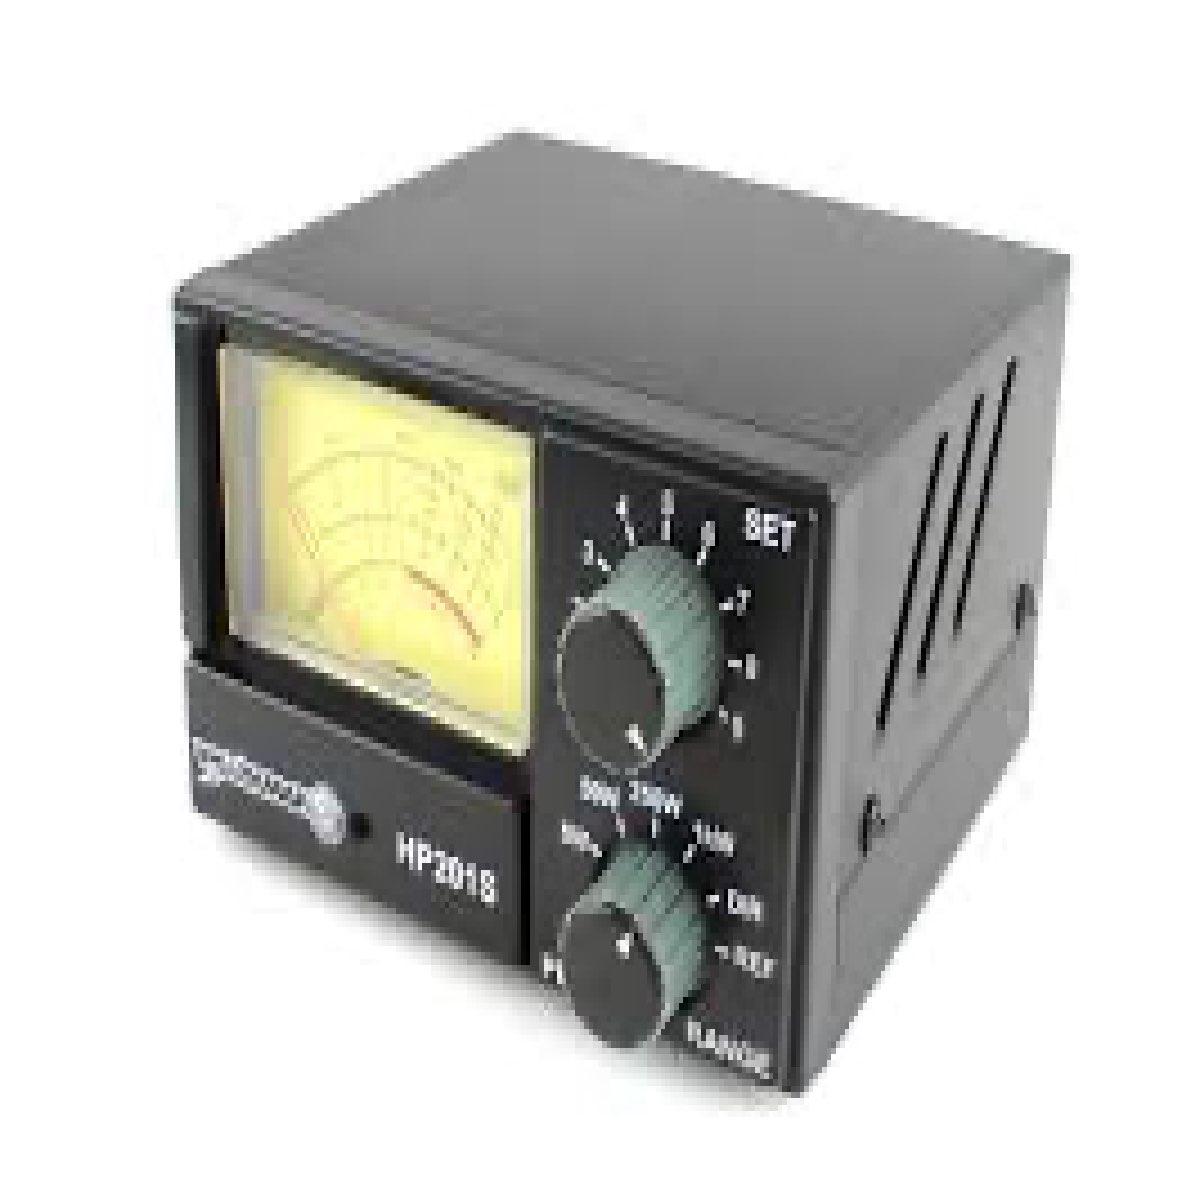 Workman HP201S 1000 Watt Swr Power Meter (Hp201S)